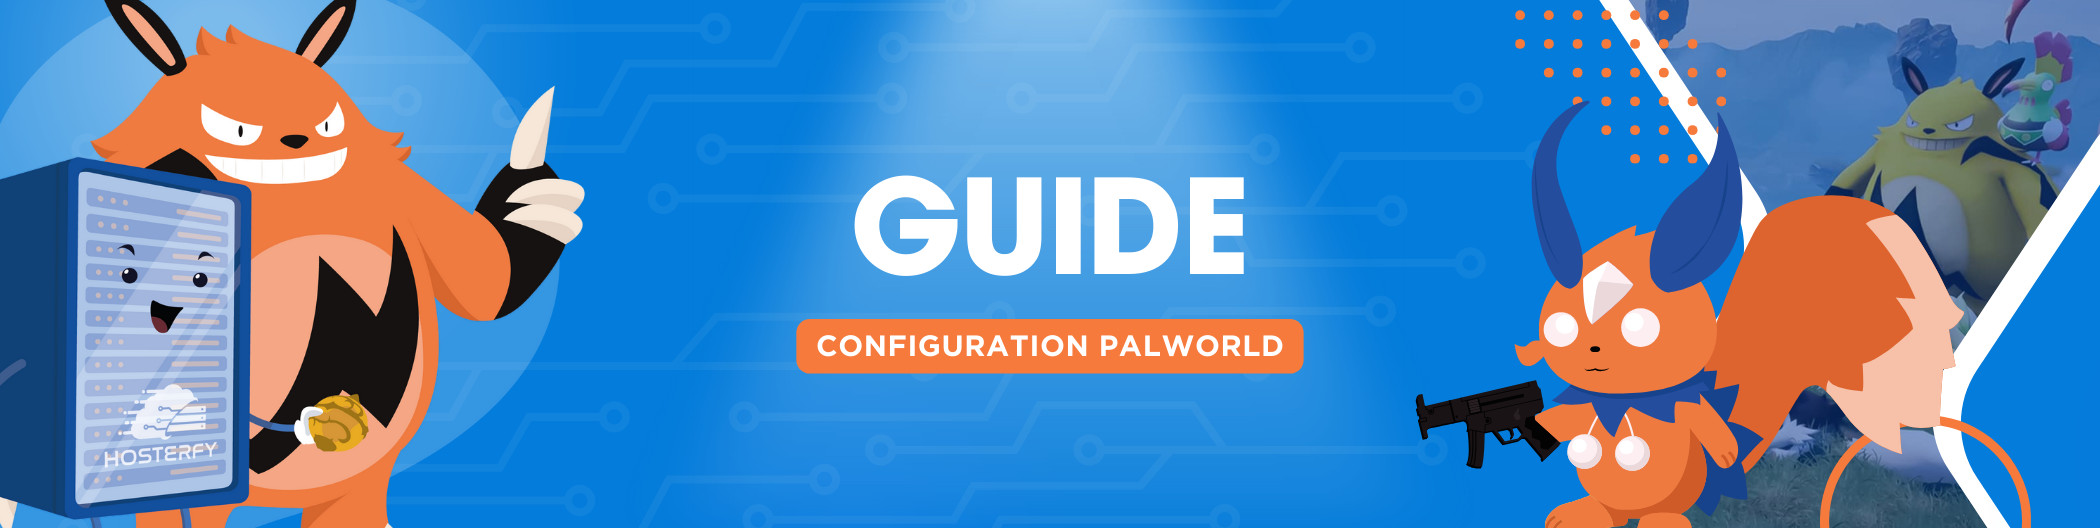 [Palworld] Modifique la configuración de su servidor